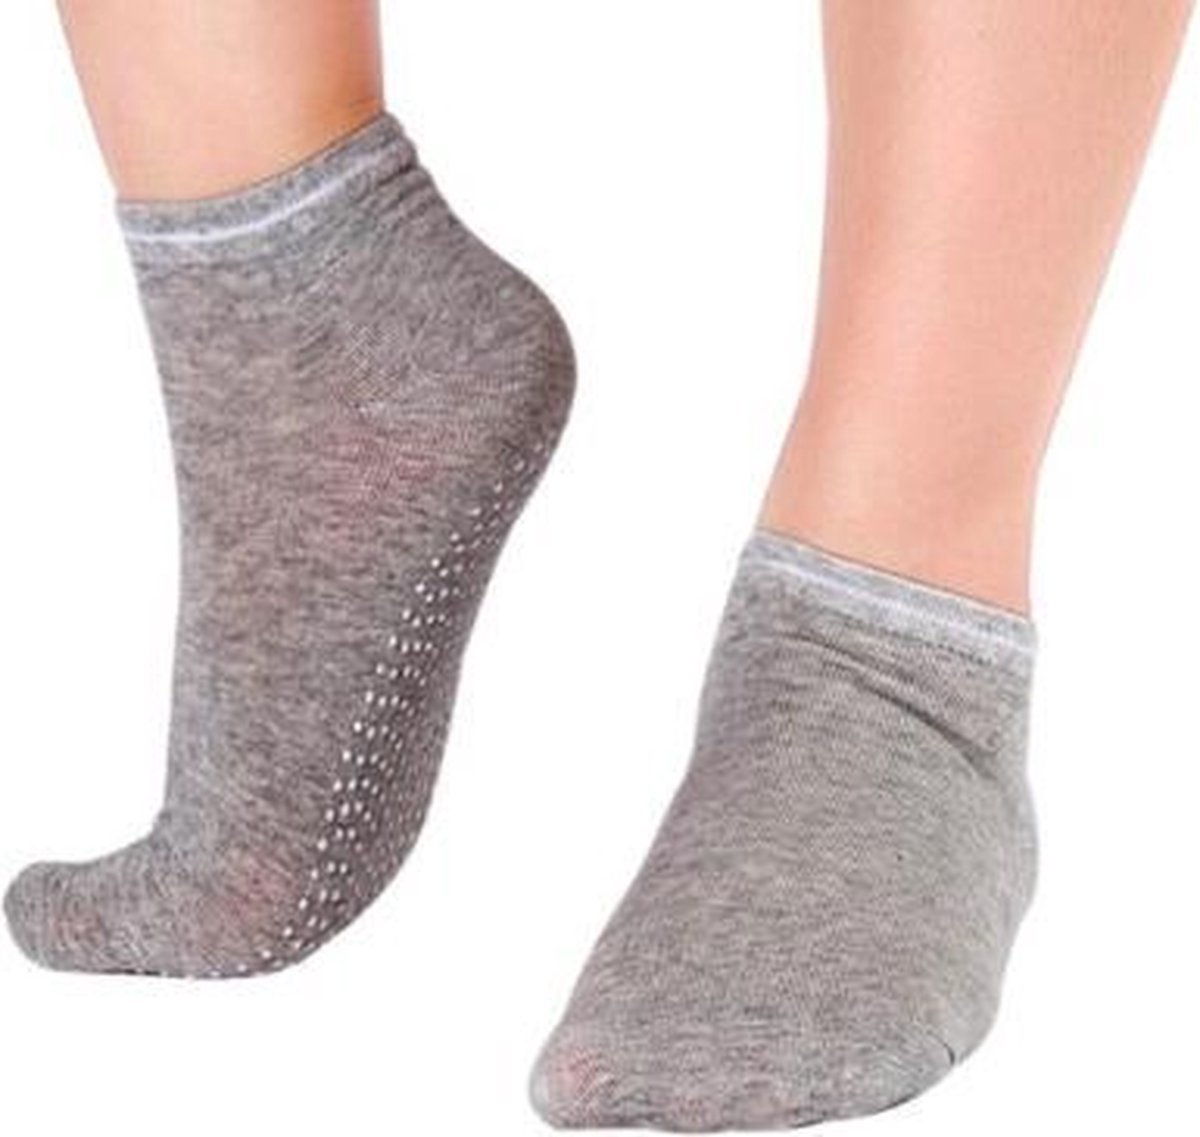 CHPN - Sokken - Anti-slip sokken - Sportsokken -Yoga sokken - Fitness sokken - Grijs - Maat 35/40 - Pilates sokken